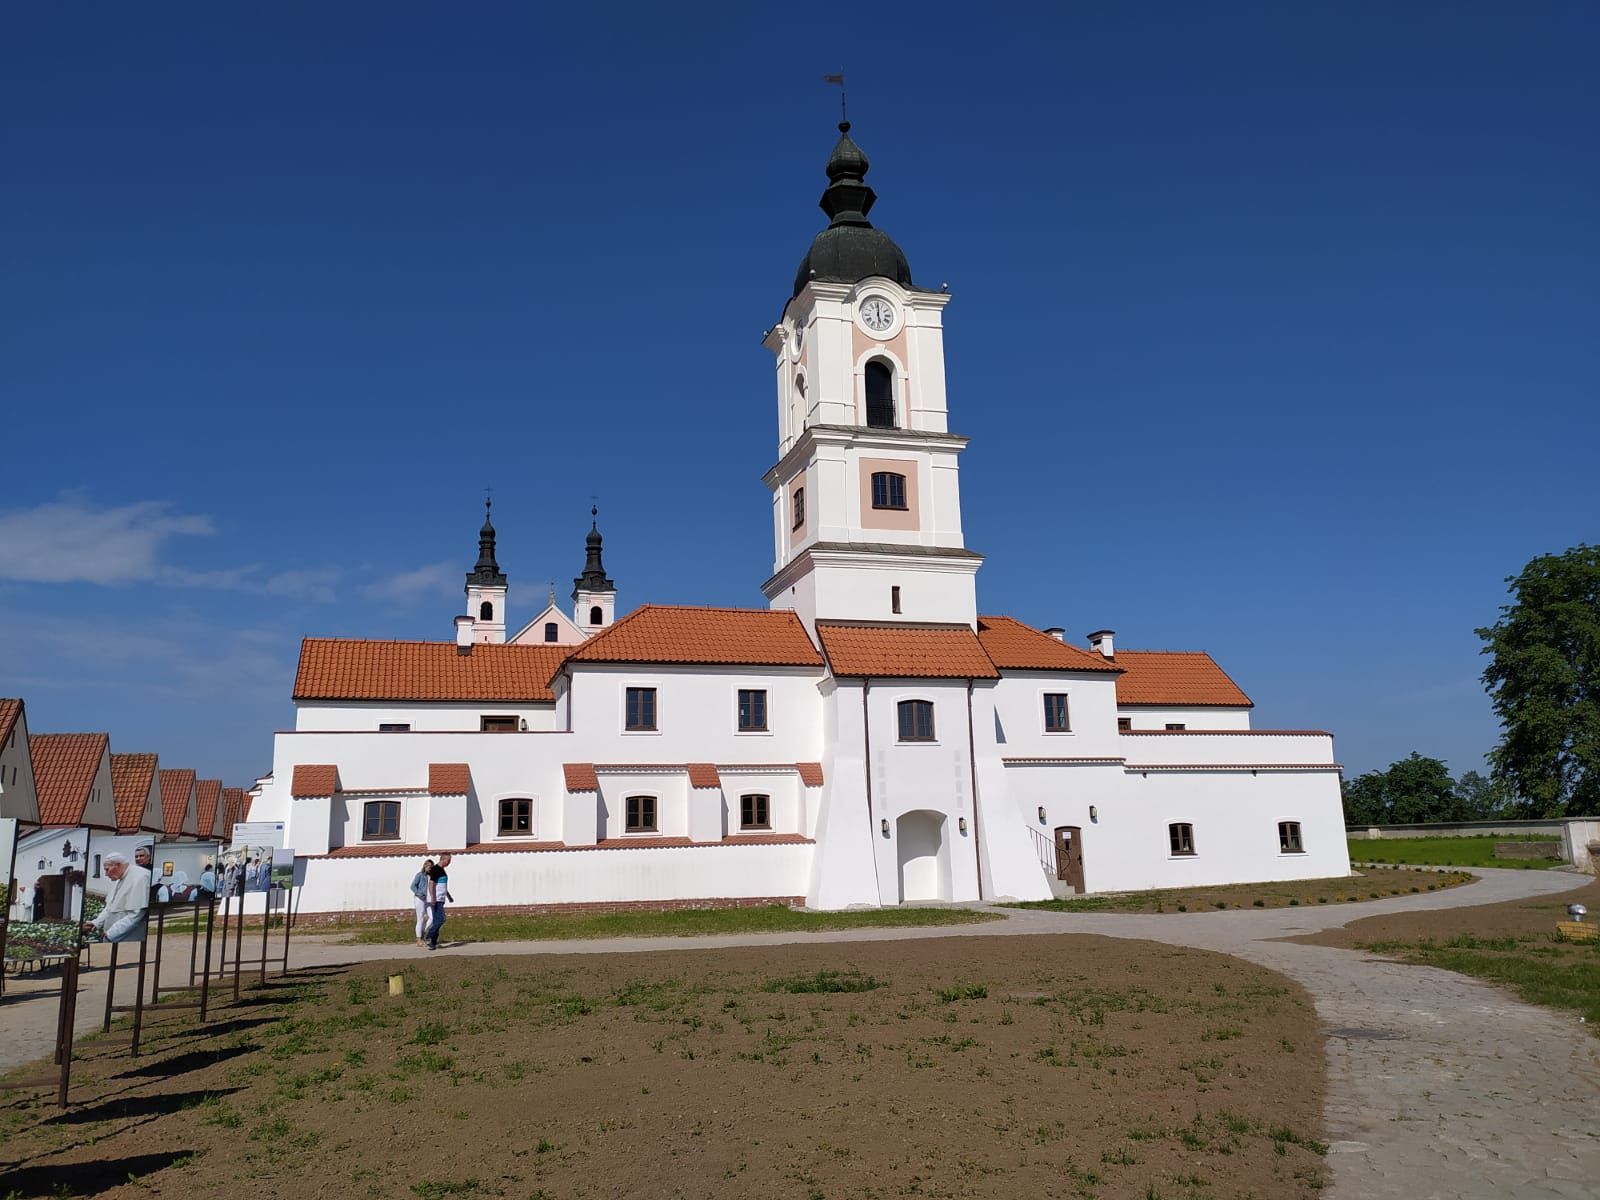 Pokamedulski Klasztor w Wigrach